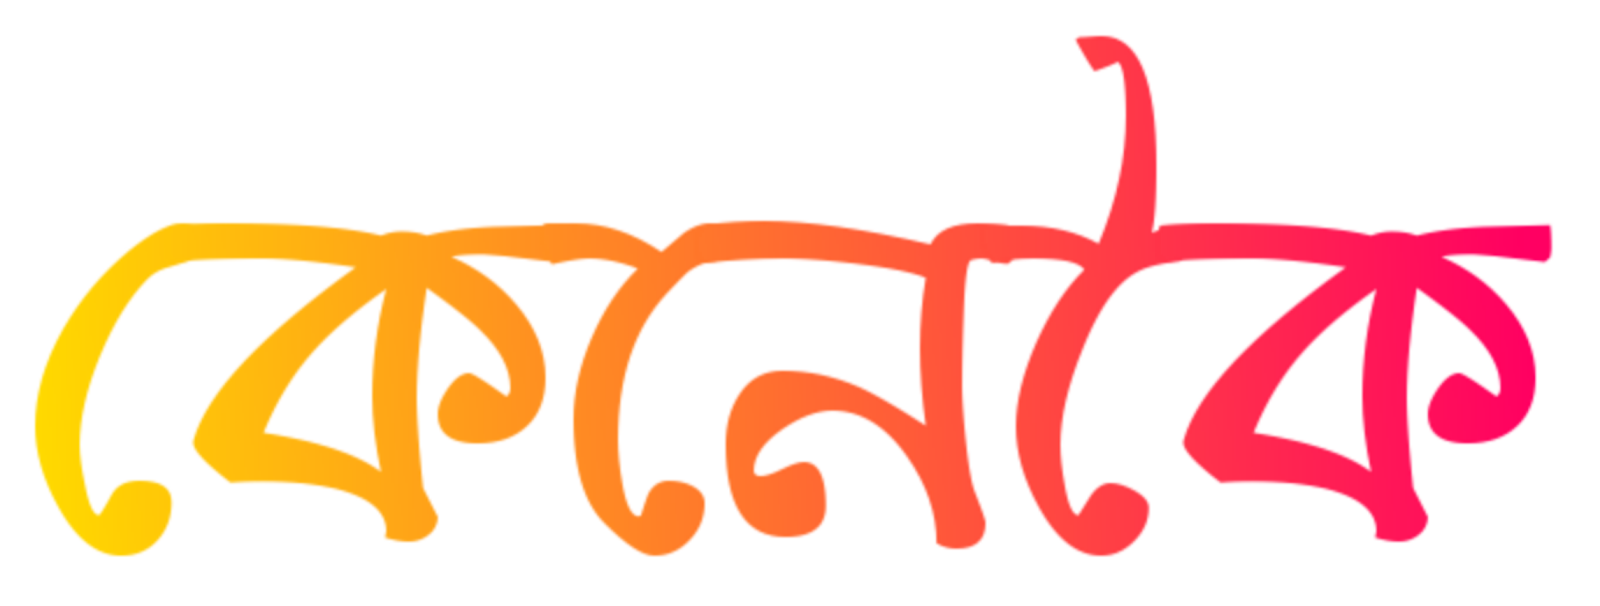 Bloging & SEO Tips in Assamese